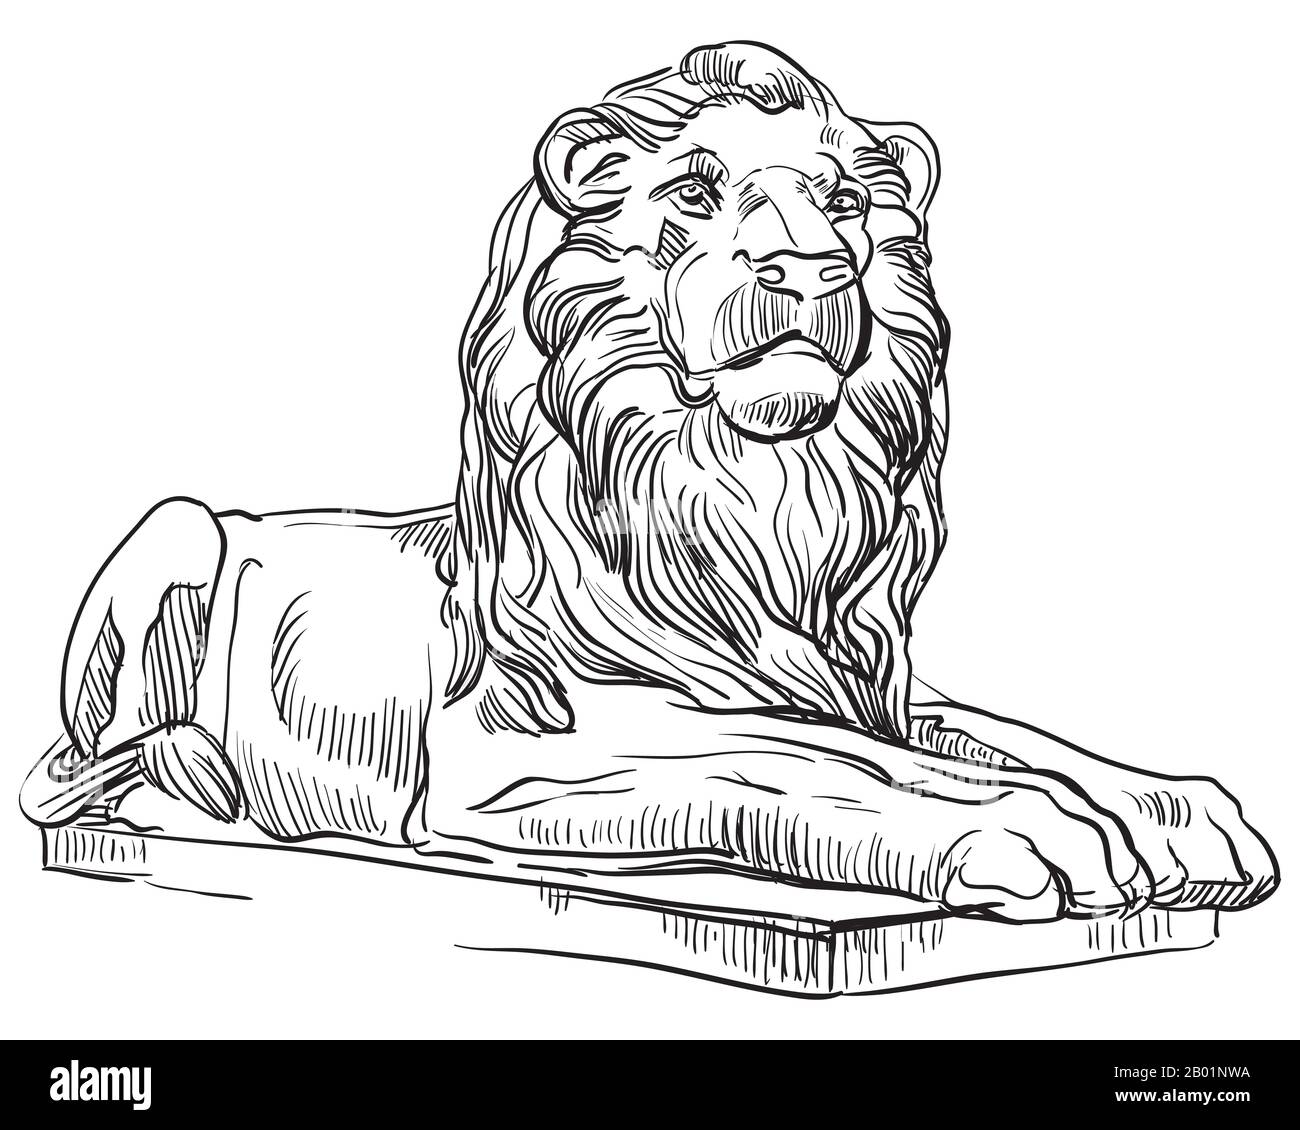 Dibujo de la vista clásica del perfil de la estatua del león griego. Ilustración de dibujo manual vectorial en color negro aislada sobre fondo blanco. Elemento gráfico para Ilustración del Vector